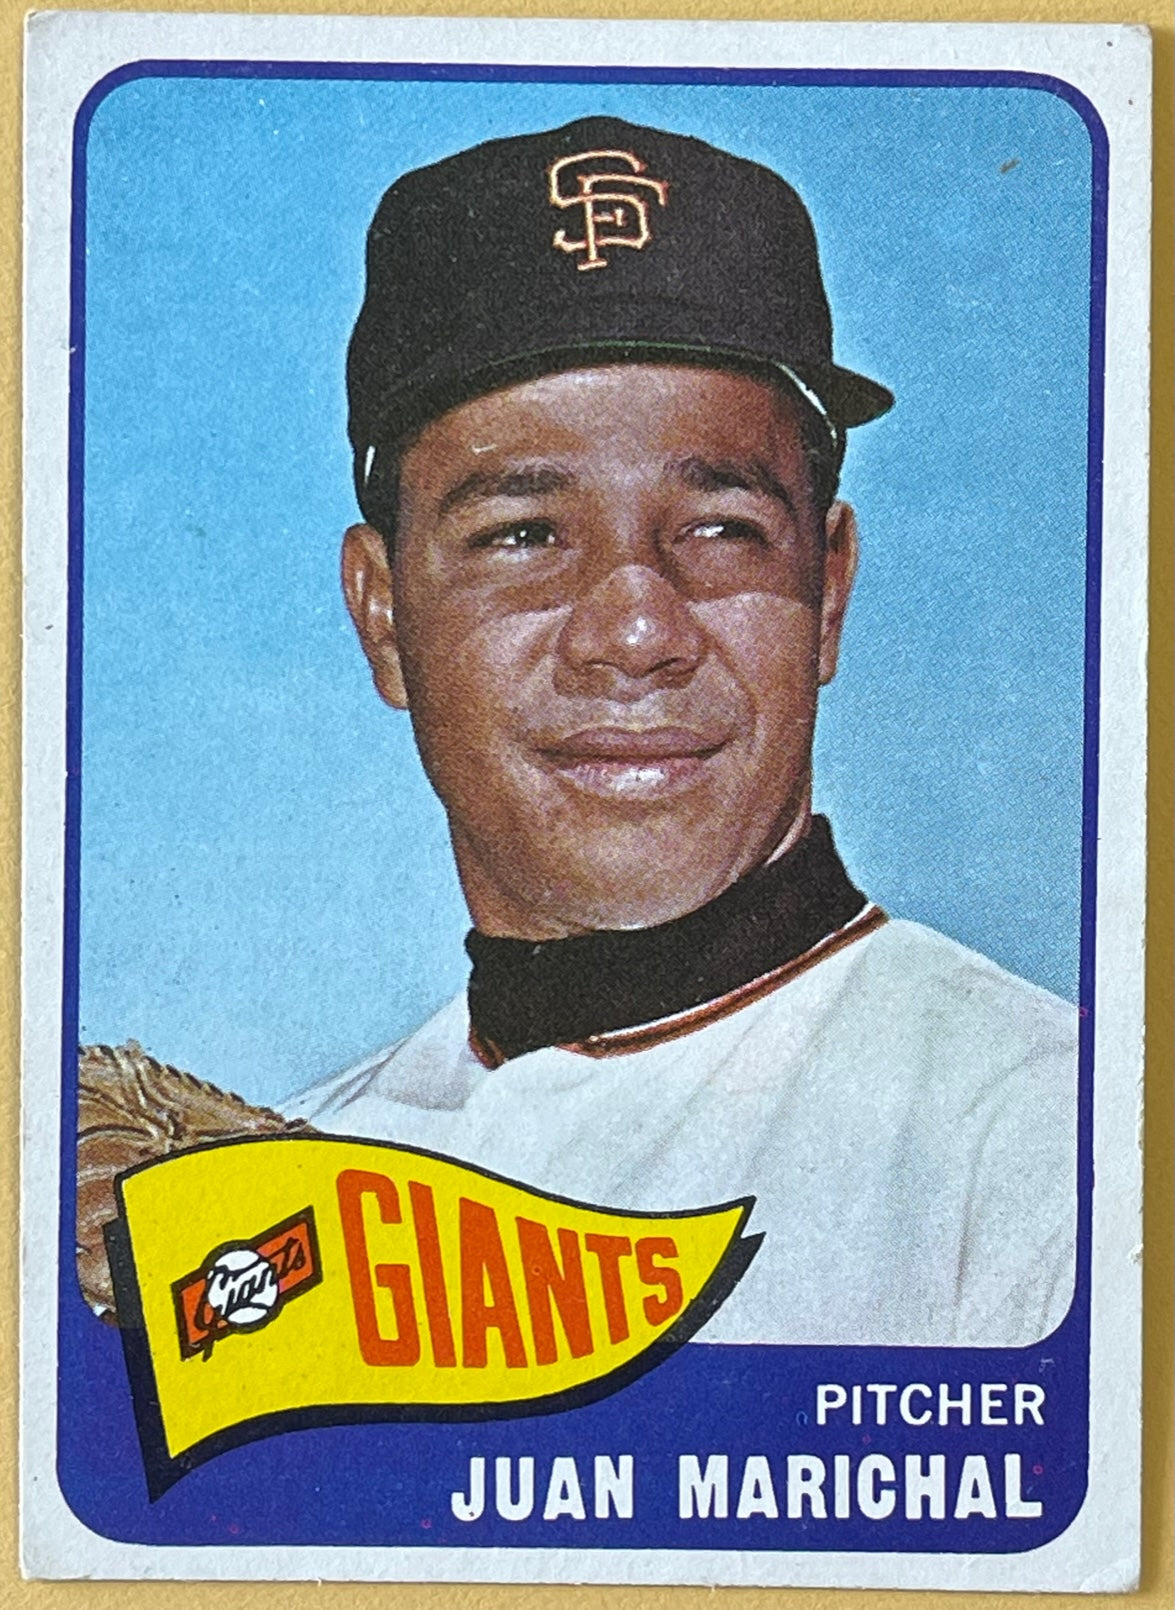 1964 Topps Giants Juan Marichal HOF #37 Vintage Baseball Card